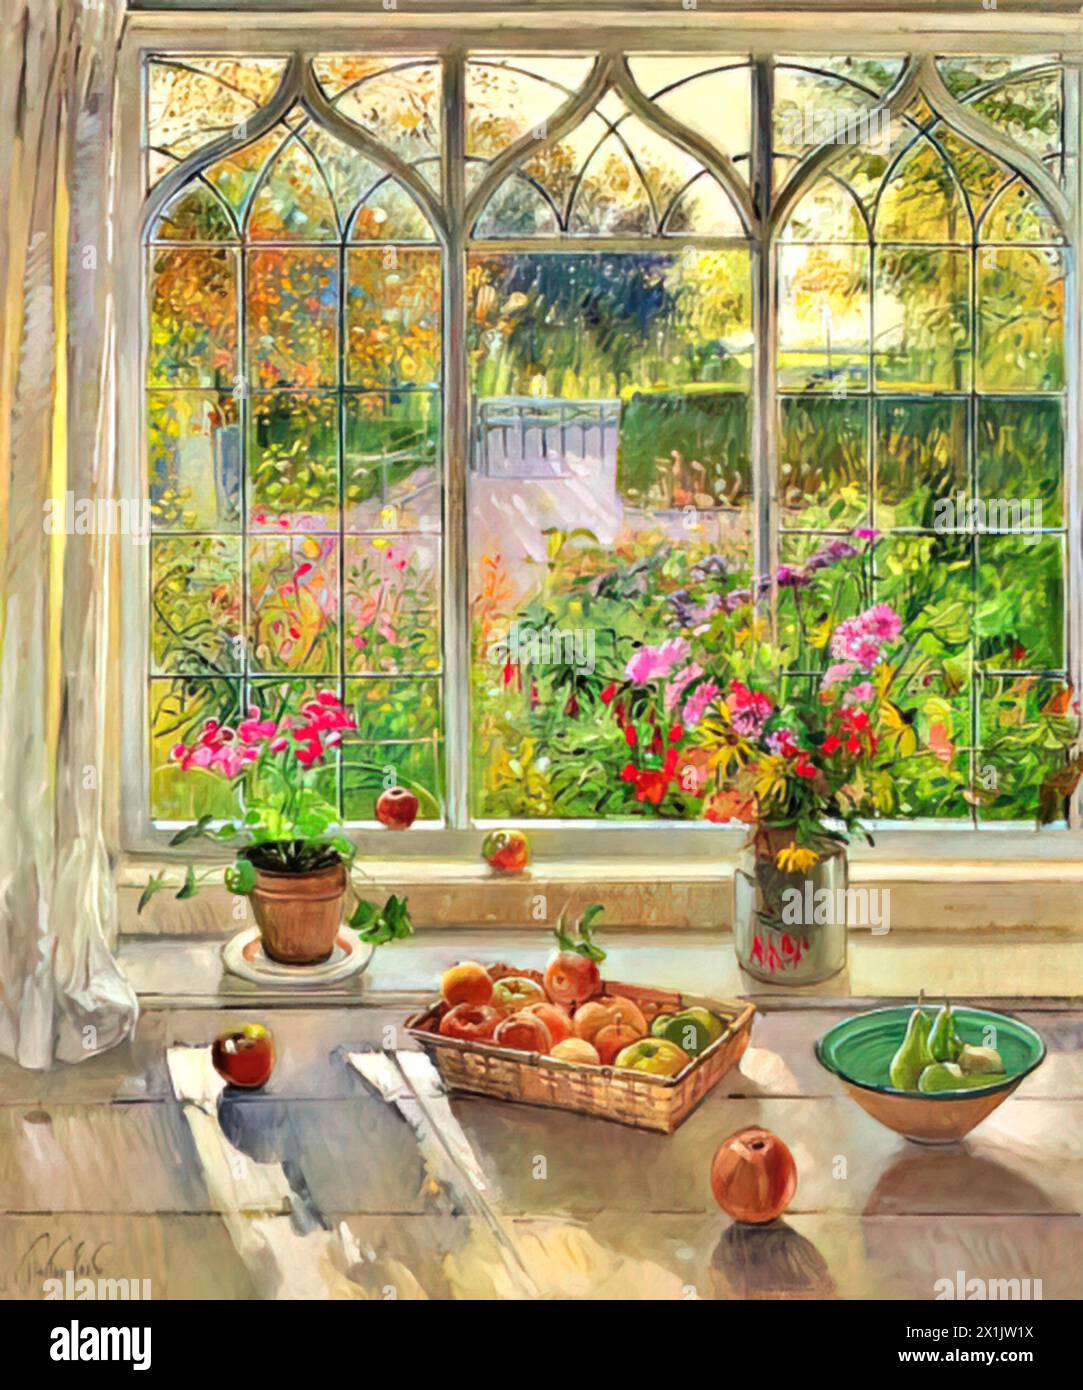 Fruits et fleurs d'automne, 2001 (peinture) artiste Easton, Timothy (né en 1943) Anglais. Illustration de Vecteur